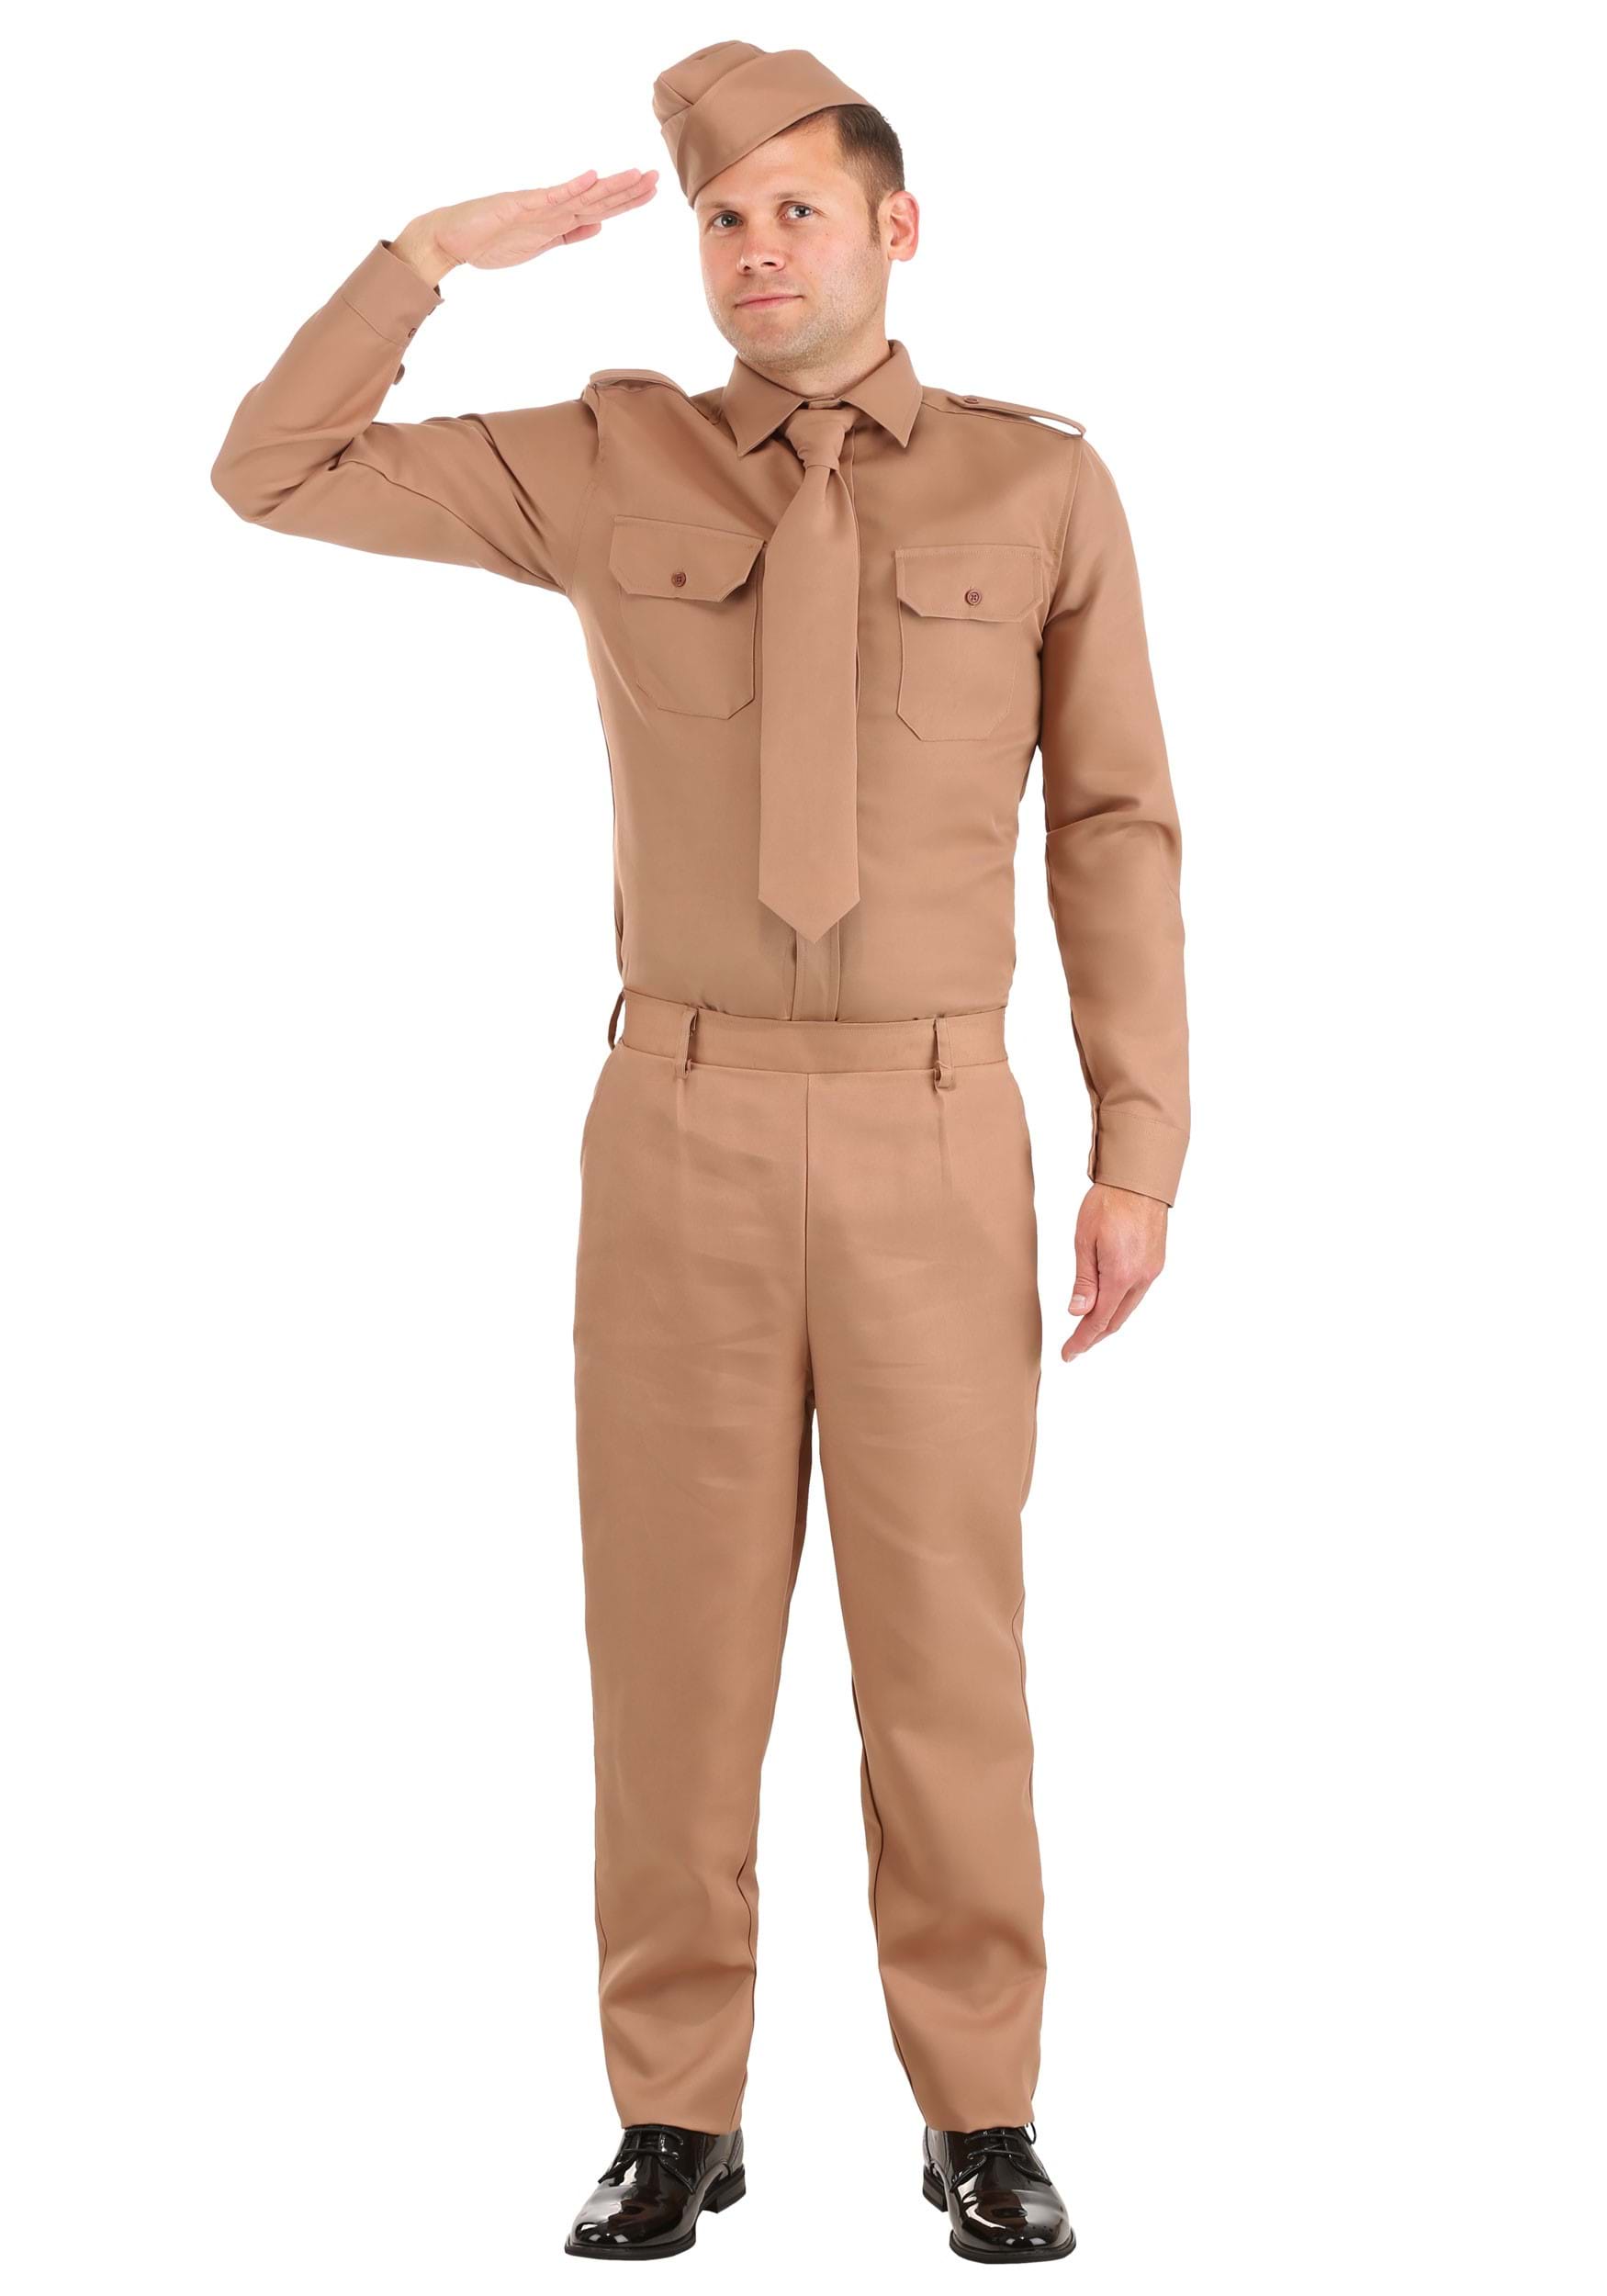 WW2 Adult Army Fancy Dress Costume